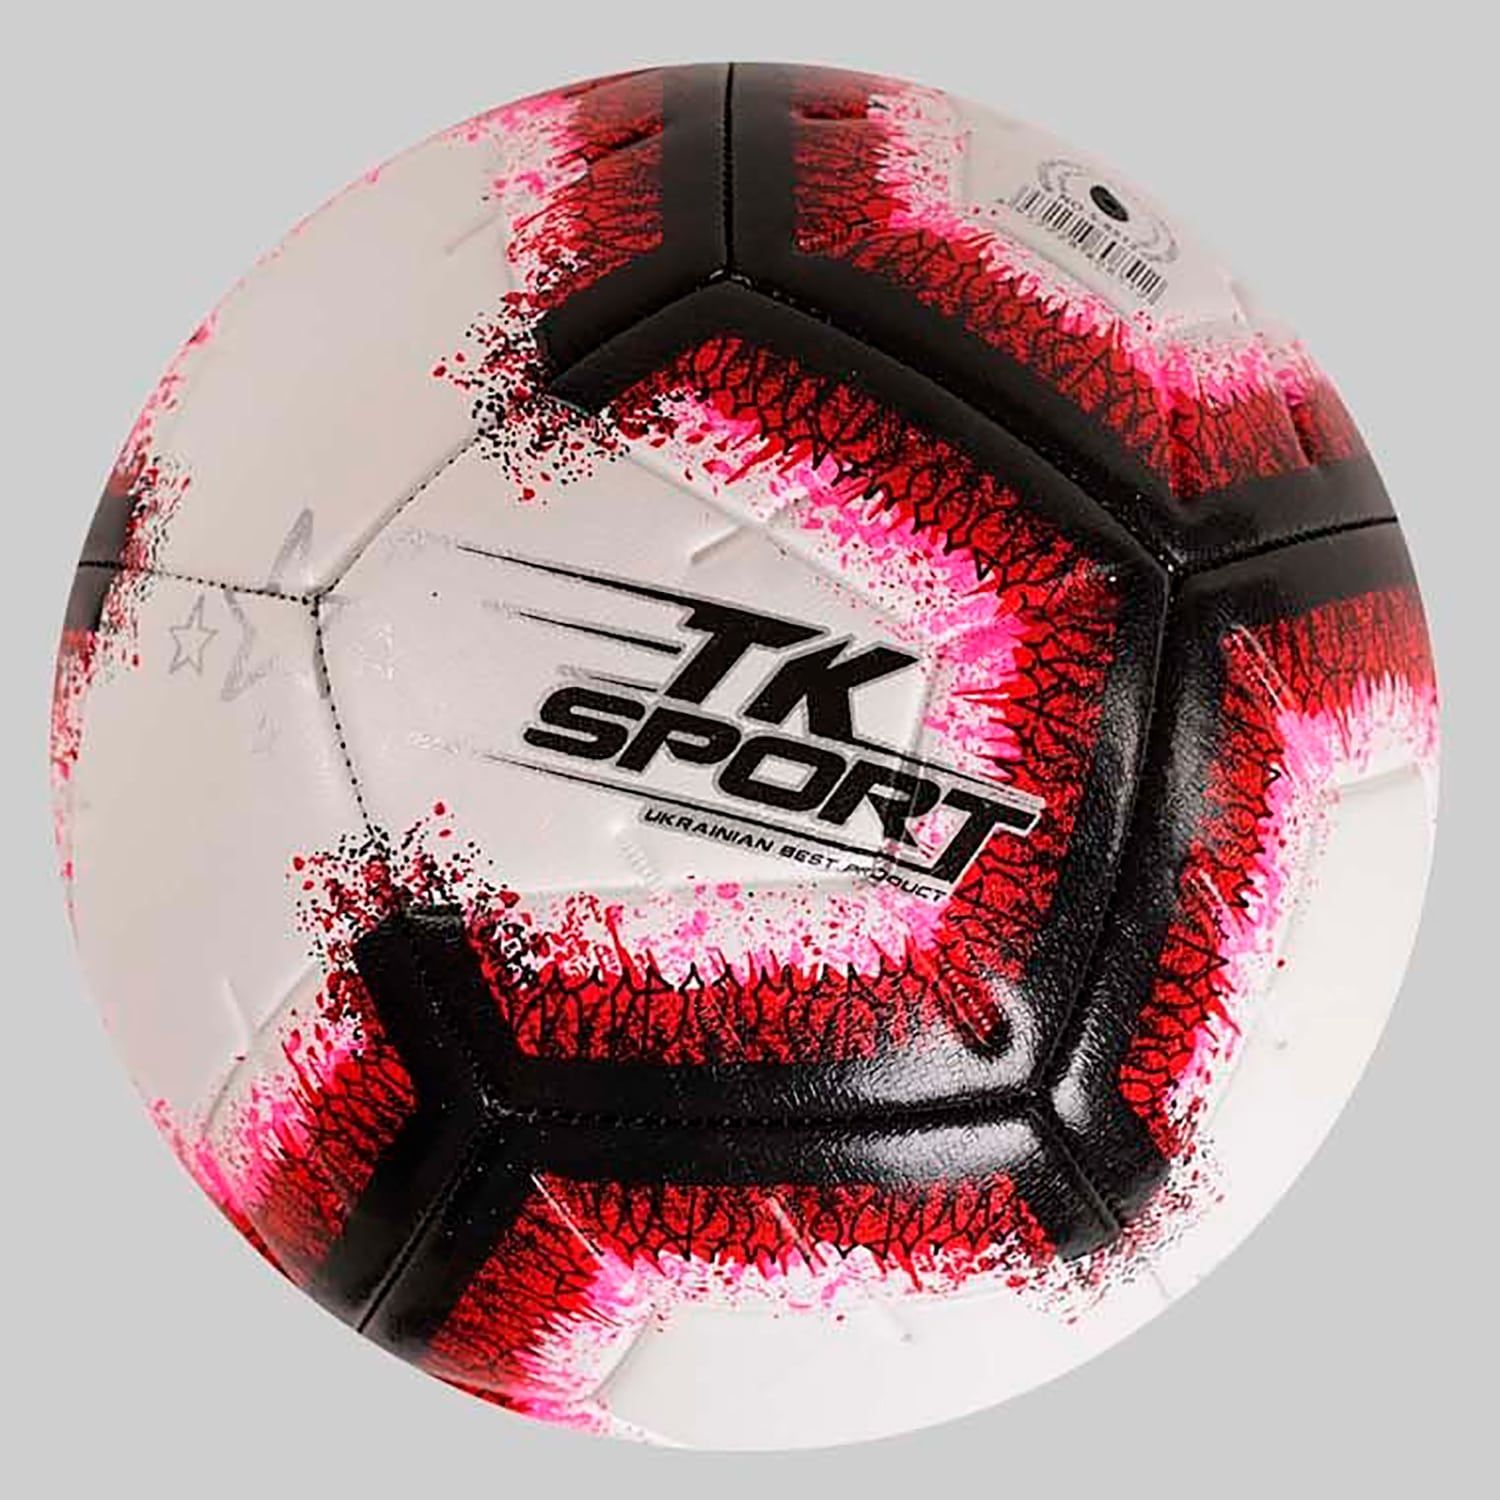 М'яч футбольний розмір №5 (C 50474) 4 види, вага 400-420 грам, матеріал TPE, балон гумовий з ниткою